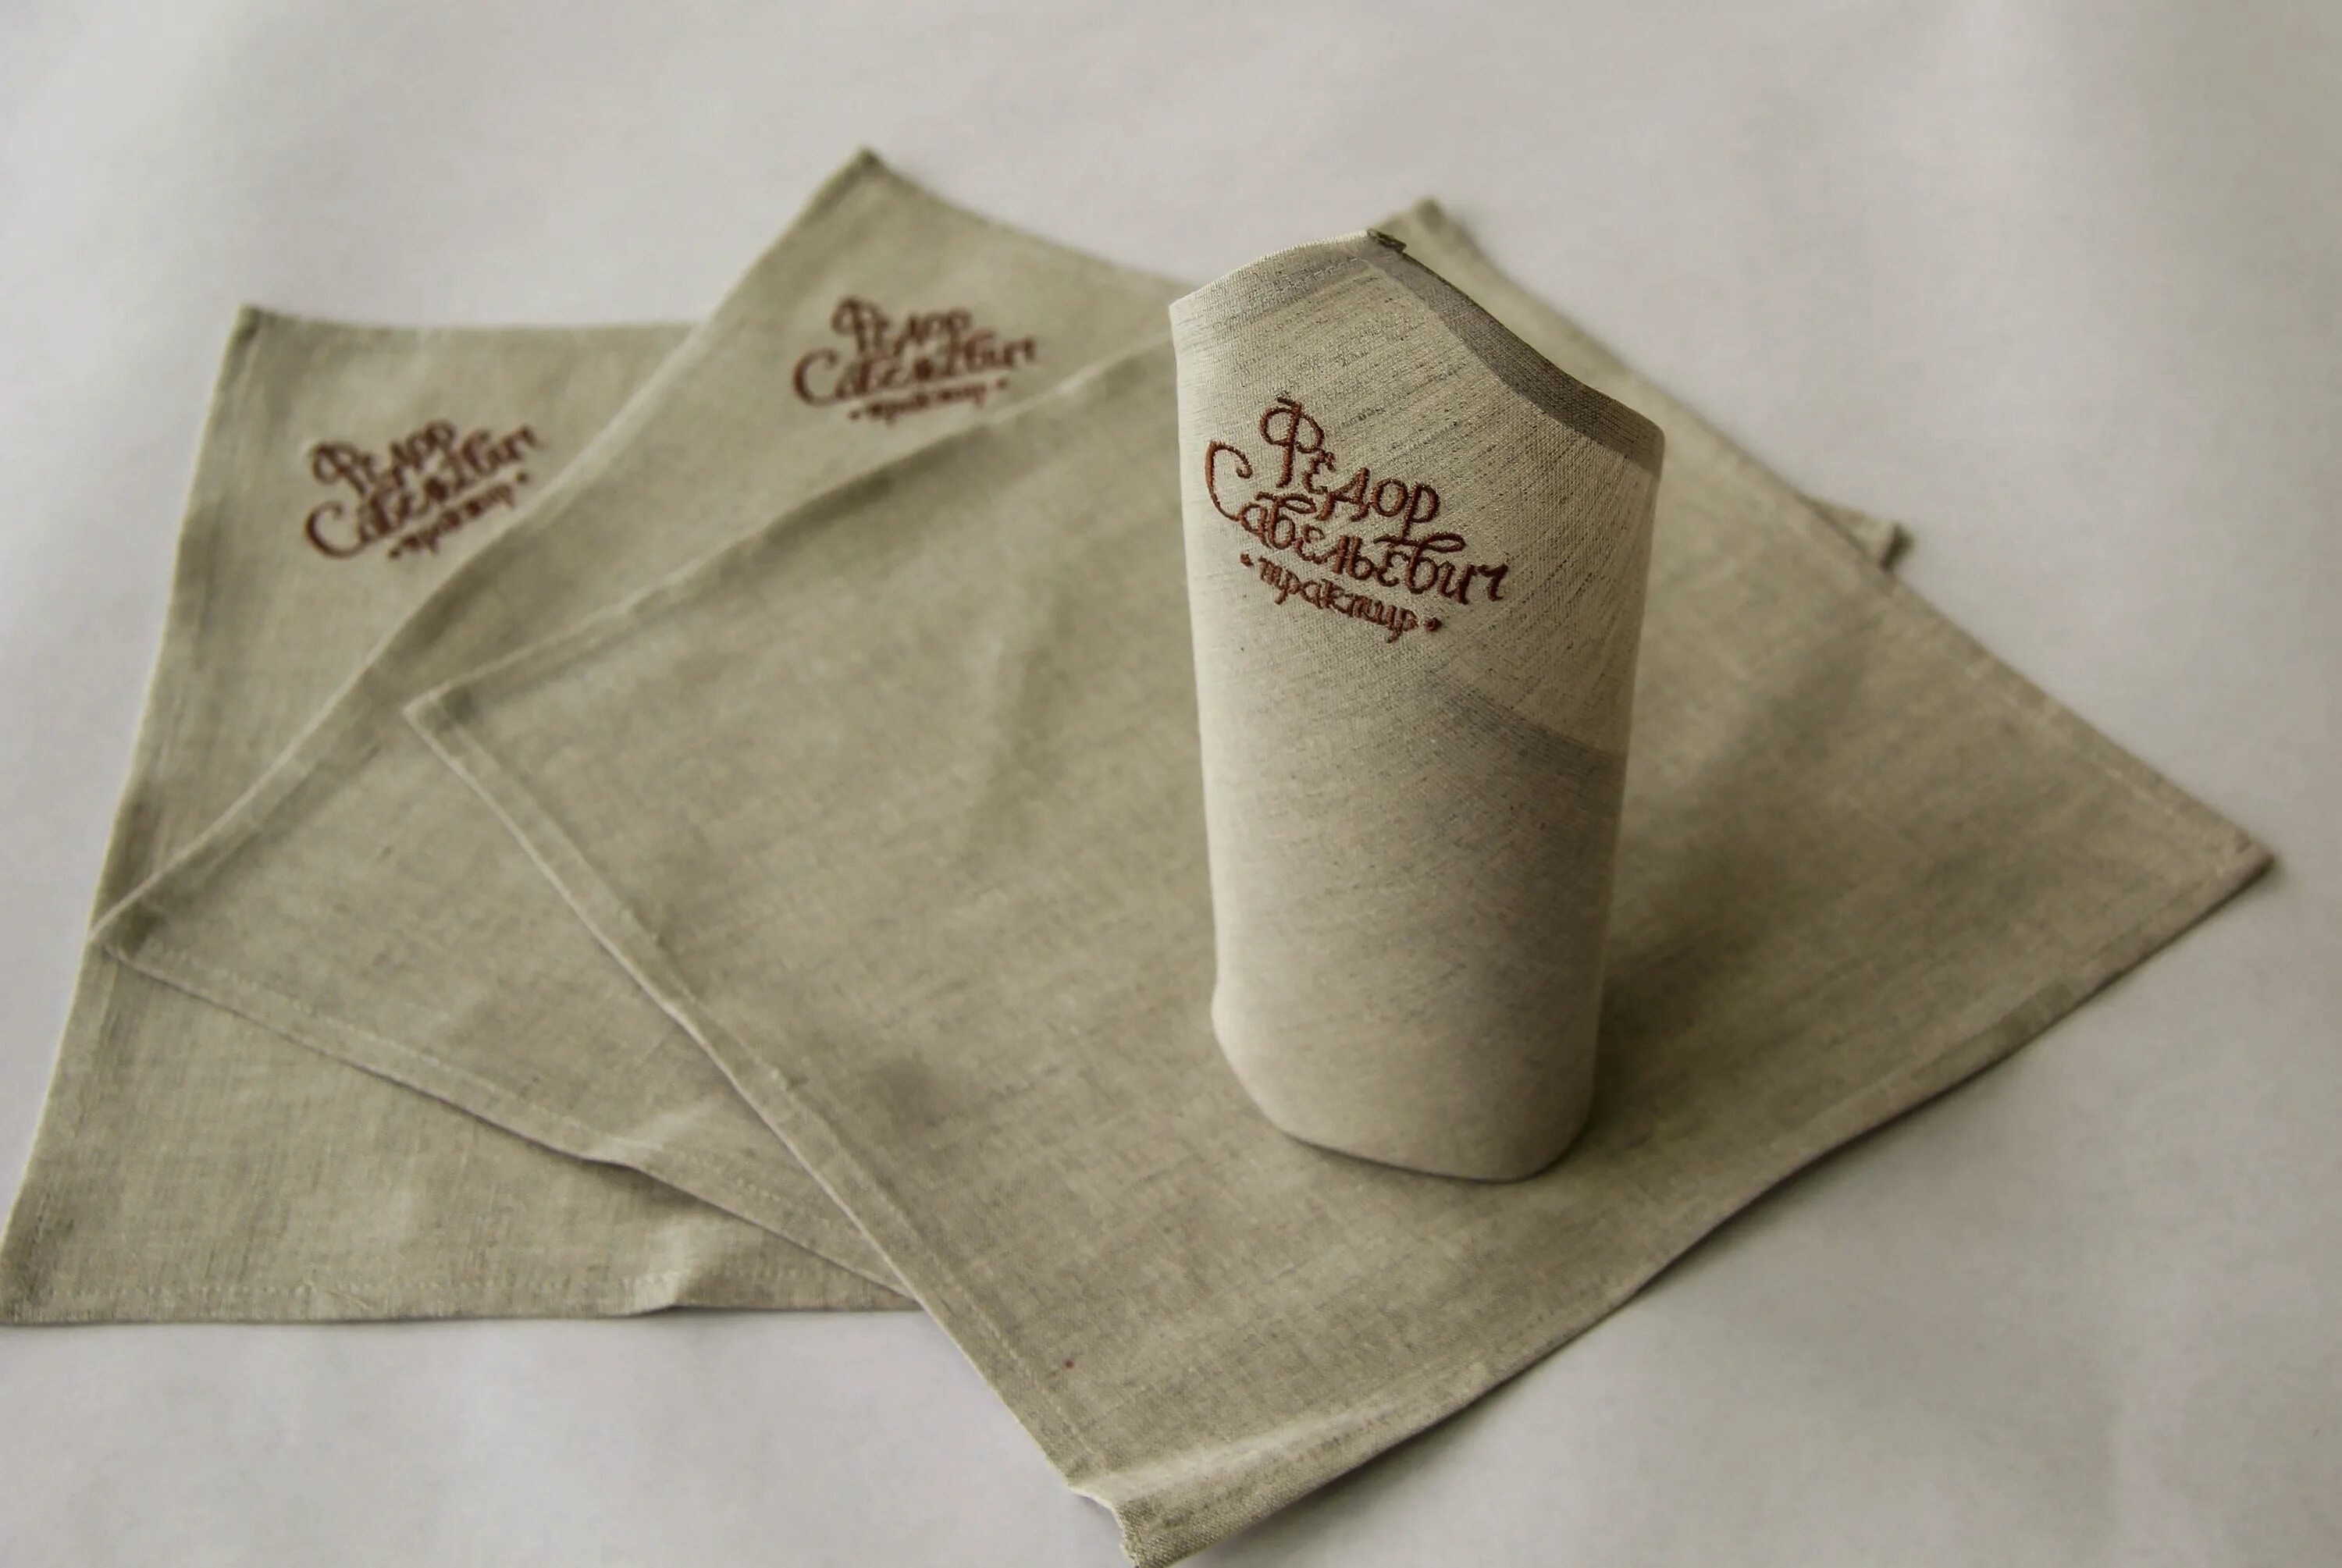 Салфетки и скатерти: необходимый текстиль для ресторанов и кафе